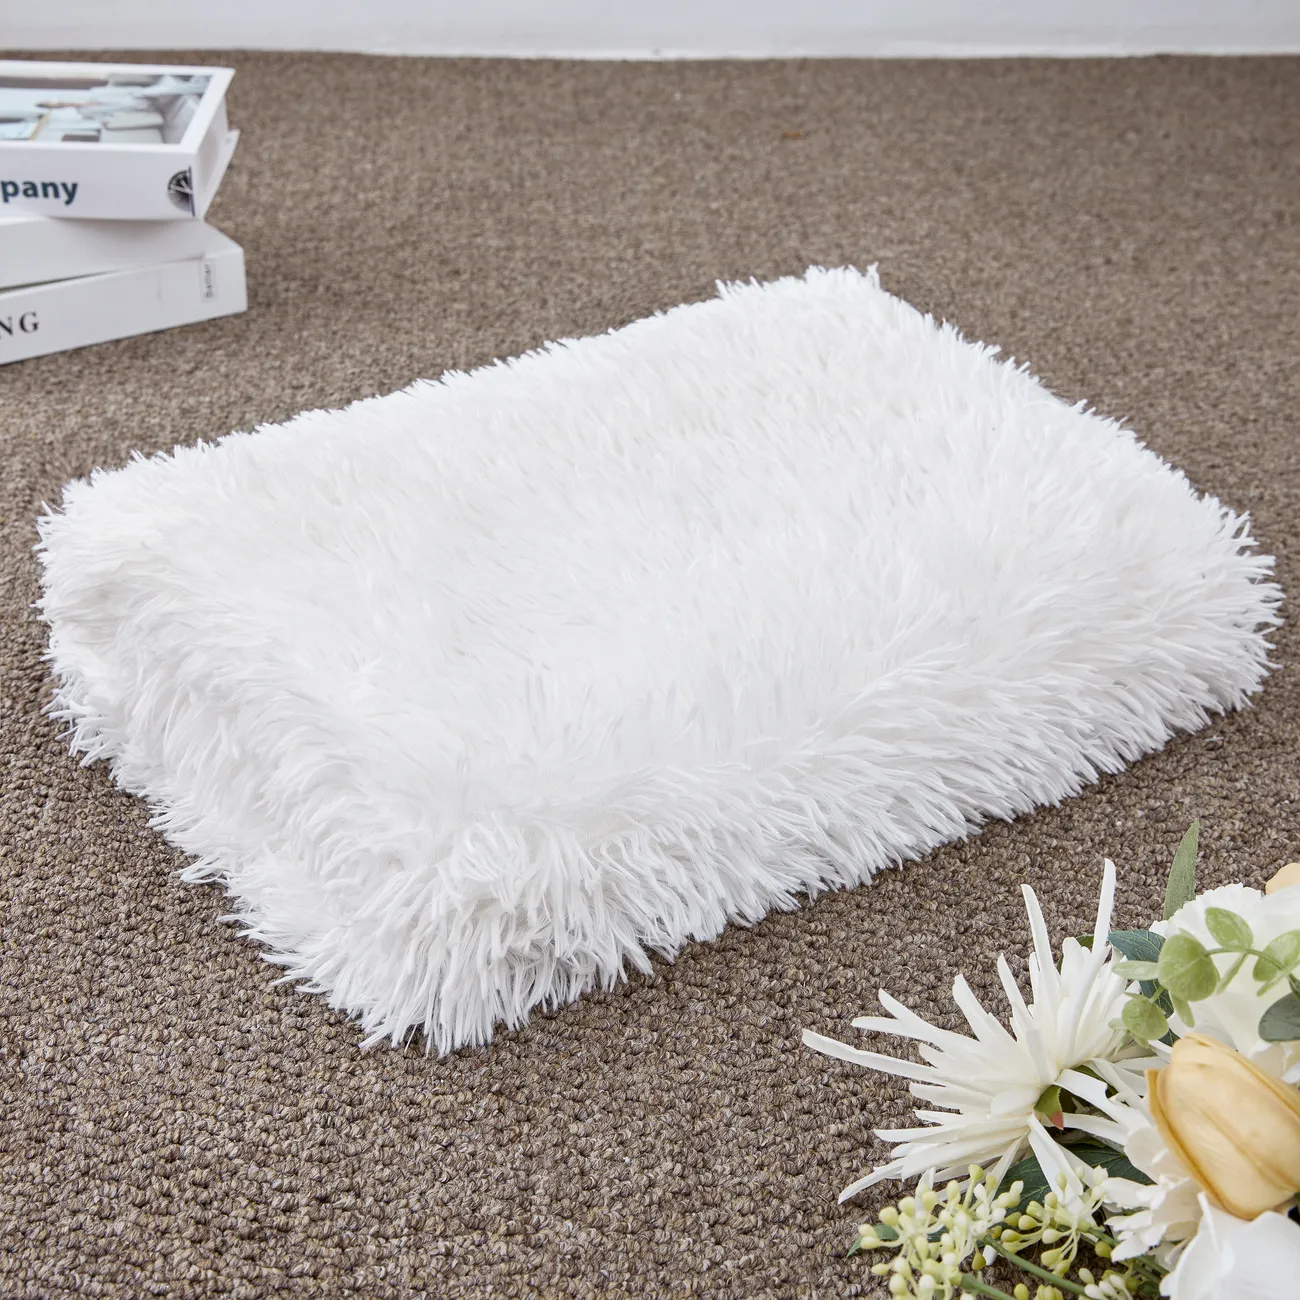 Couverture polaire PV blanche de qualité supérieure - Ultra-douce, durable, lavable en machine - parfaite pour le confort de la maison et la décoration élégante Blanc big image 1